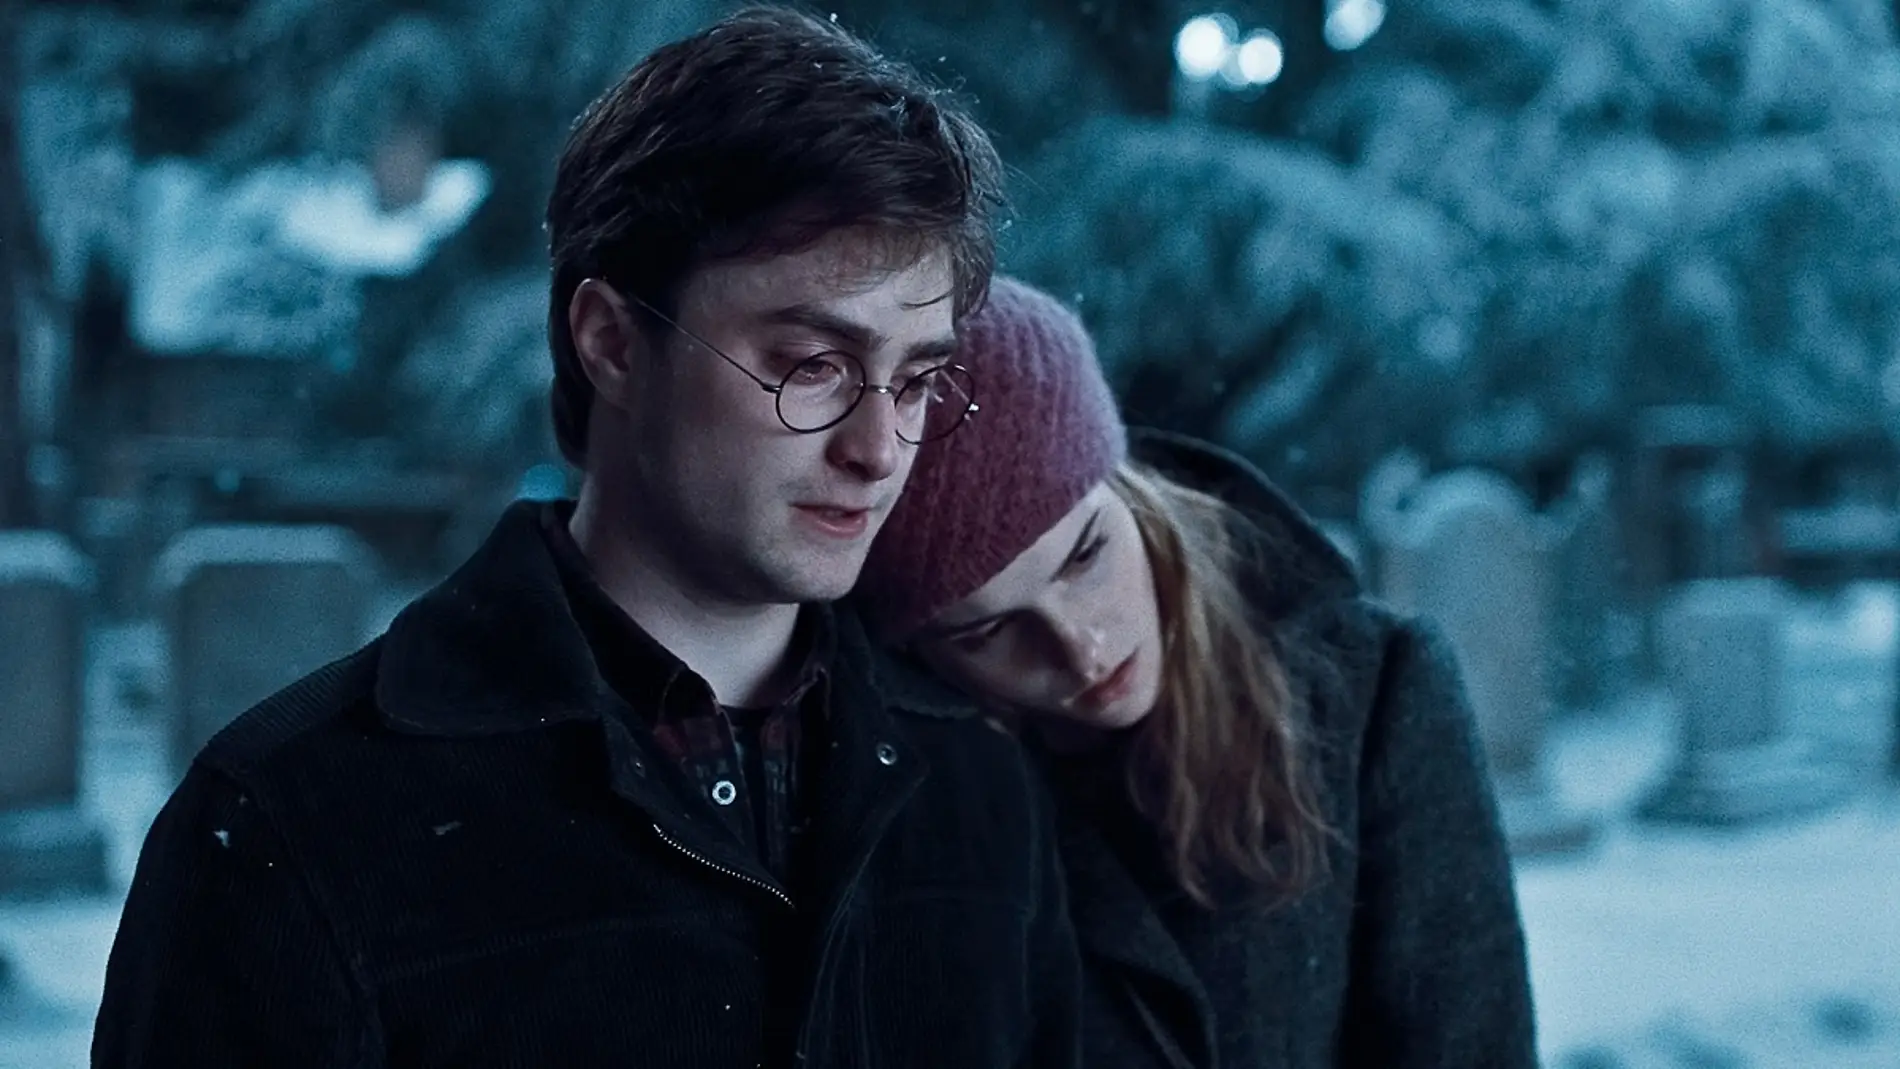 Harry y Hermione en 'Harry Potter'